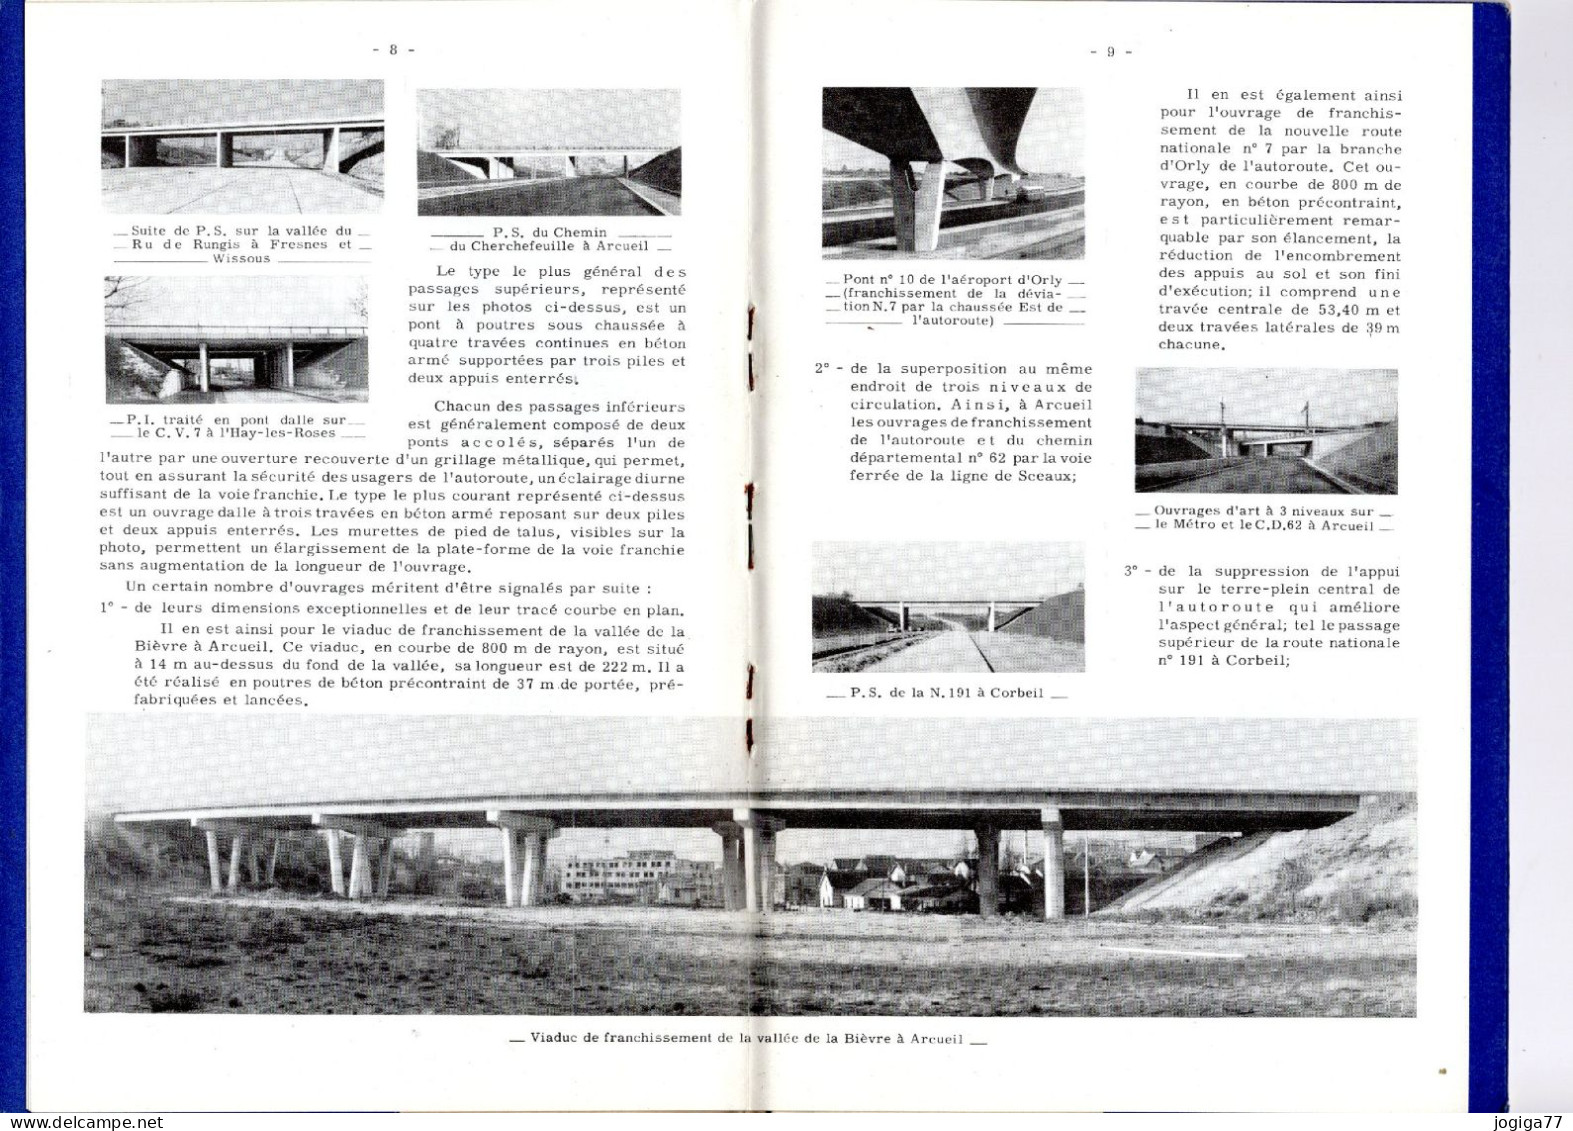 L'autoroute Du Sud De Paris - Paris-Corbeil - Livret Ponts Et Chaussées - 1960 - Publieke Werken